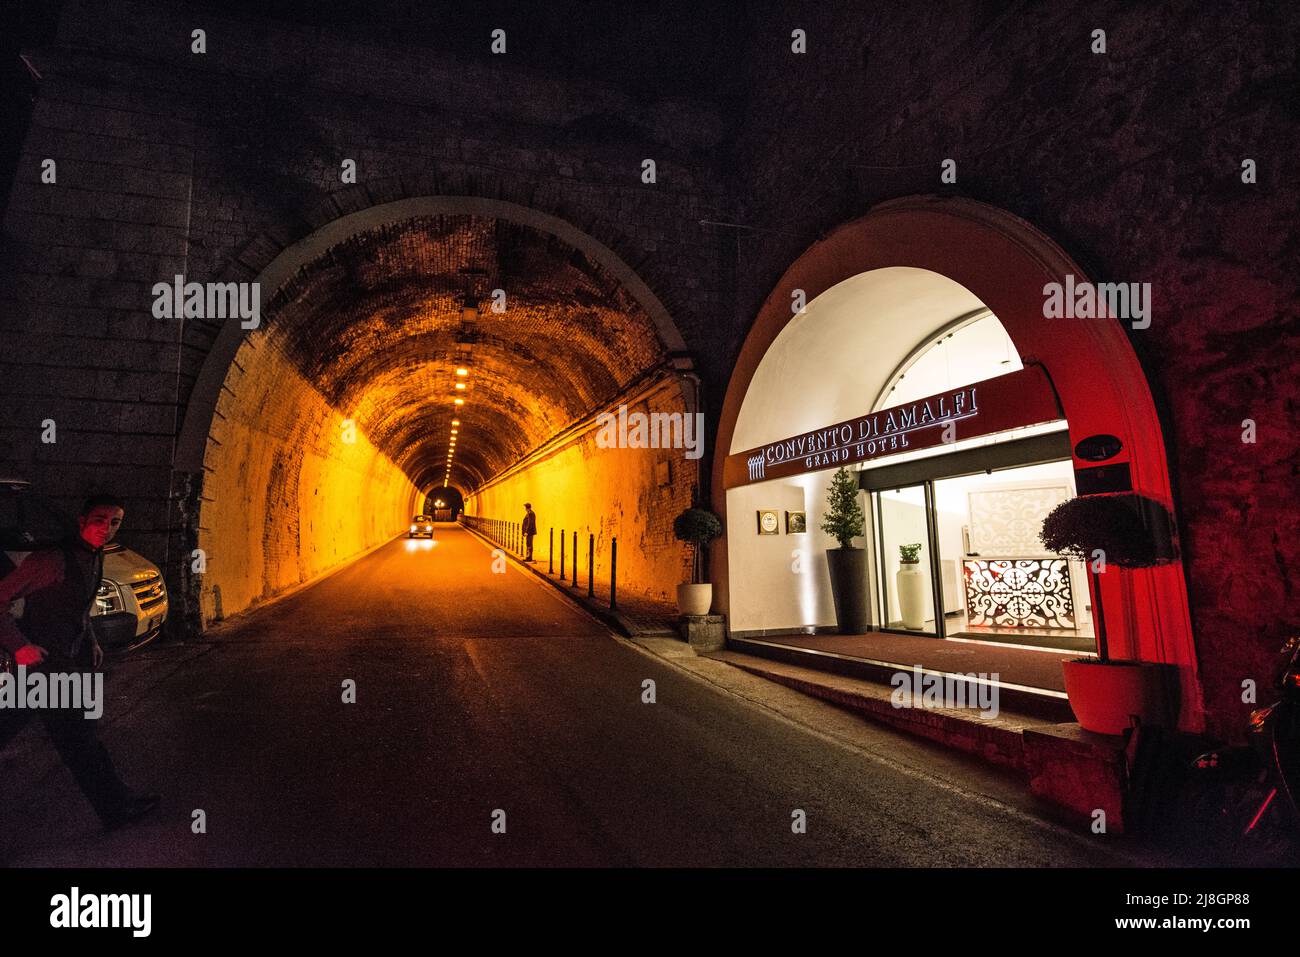 Convento di Amalfi Tunnel, Italy. Stock Photo